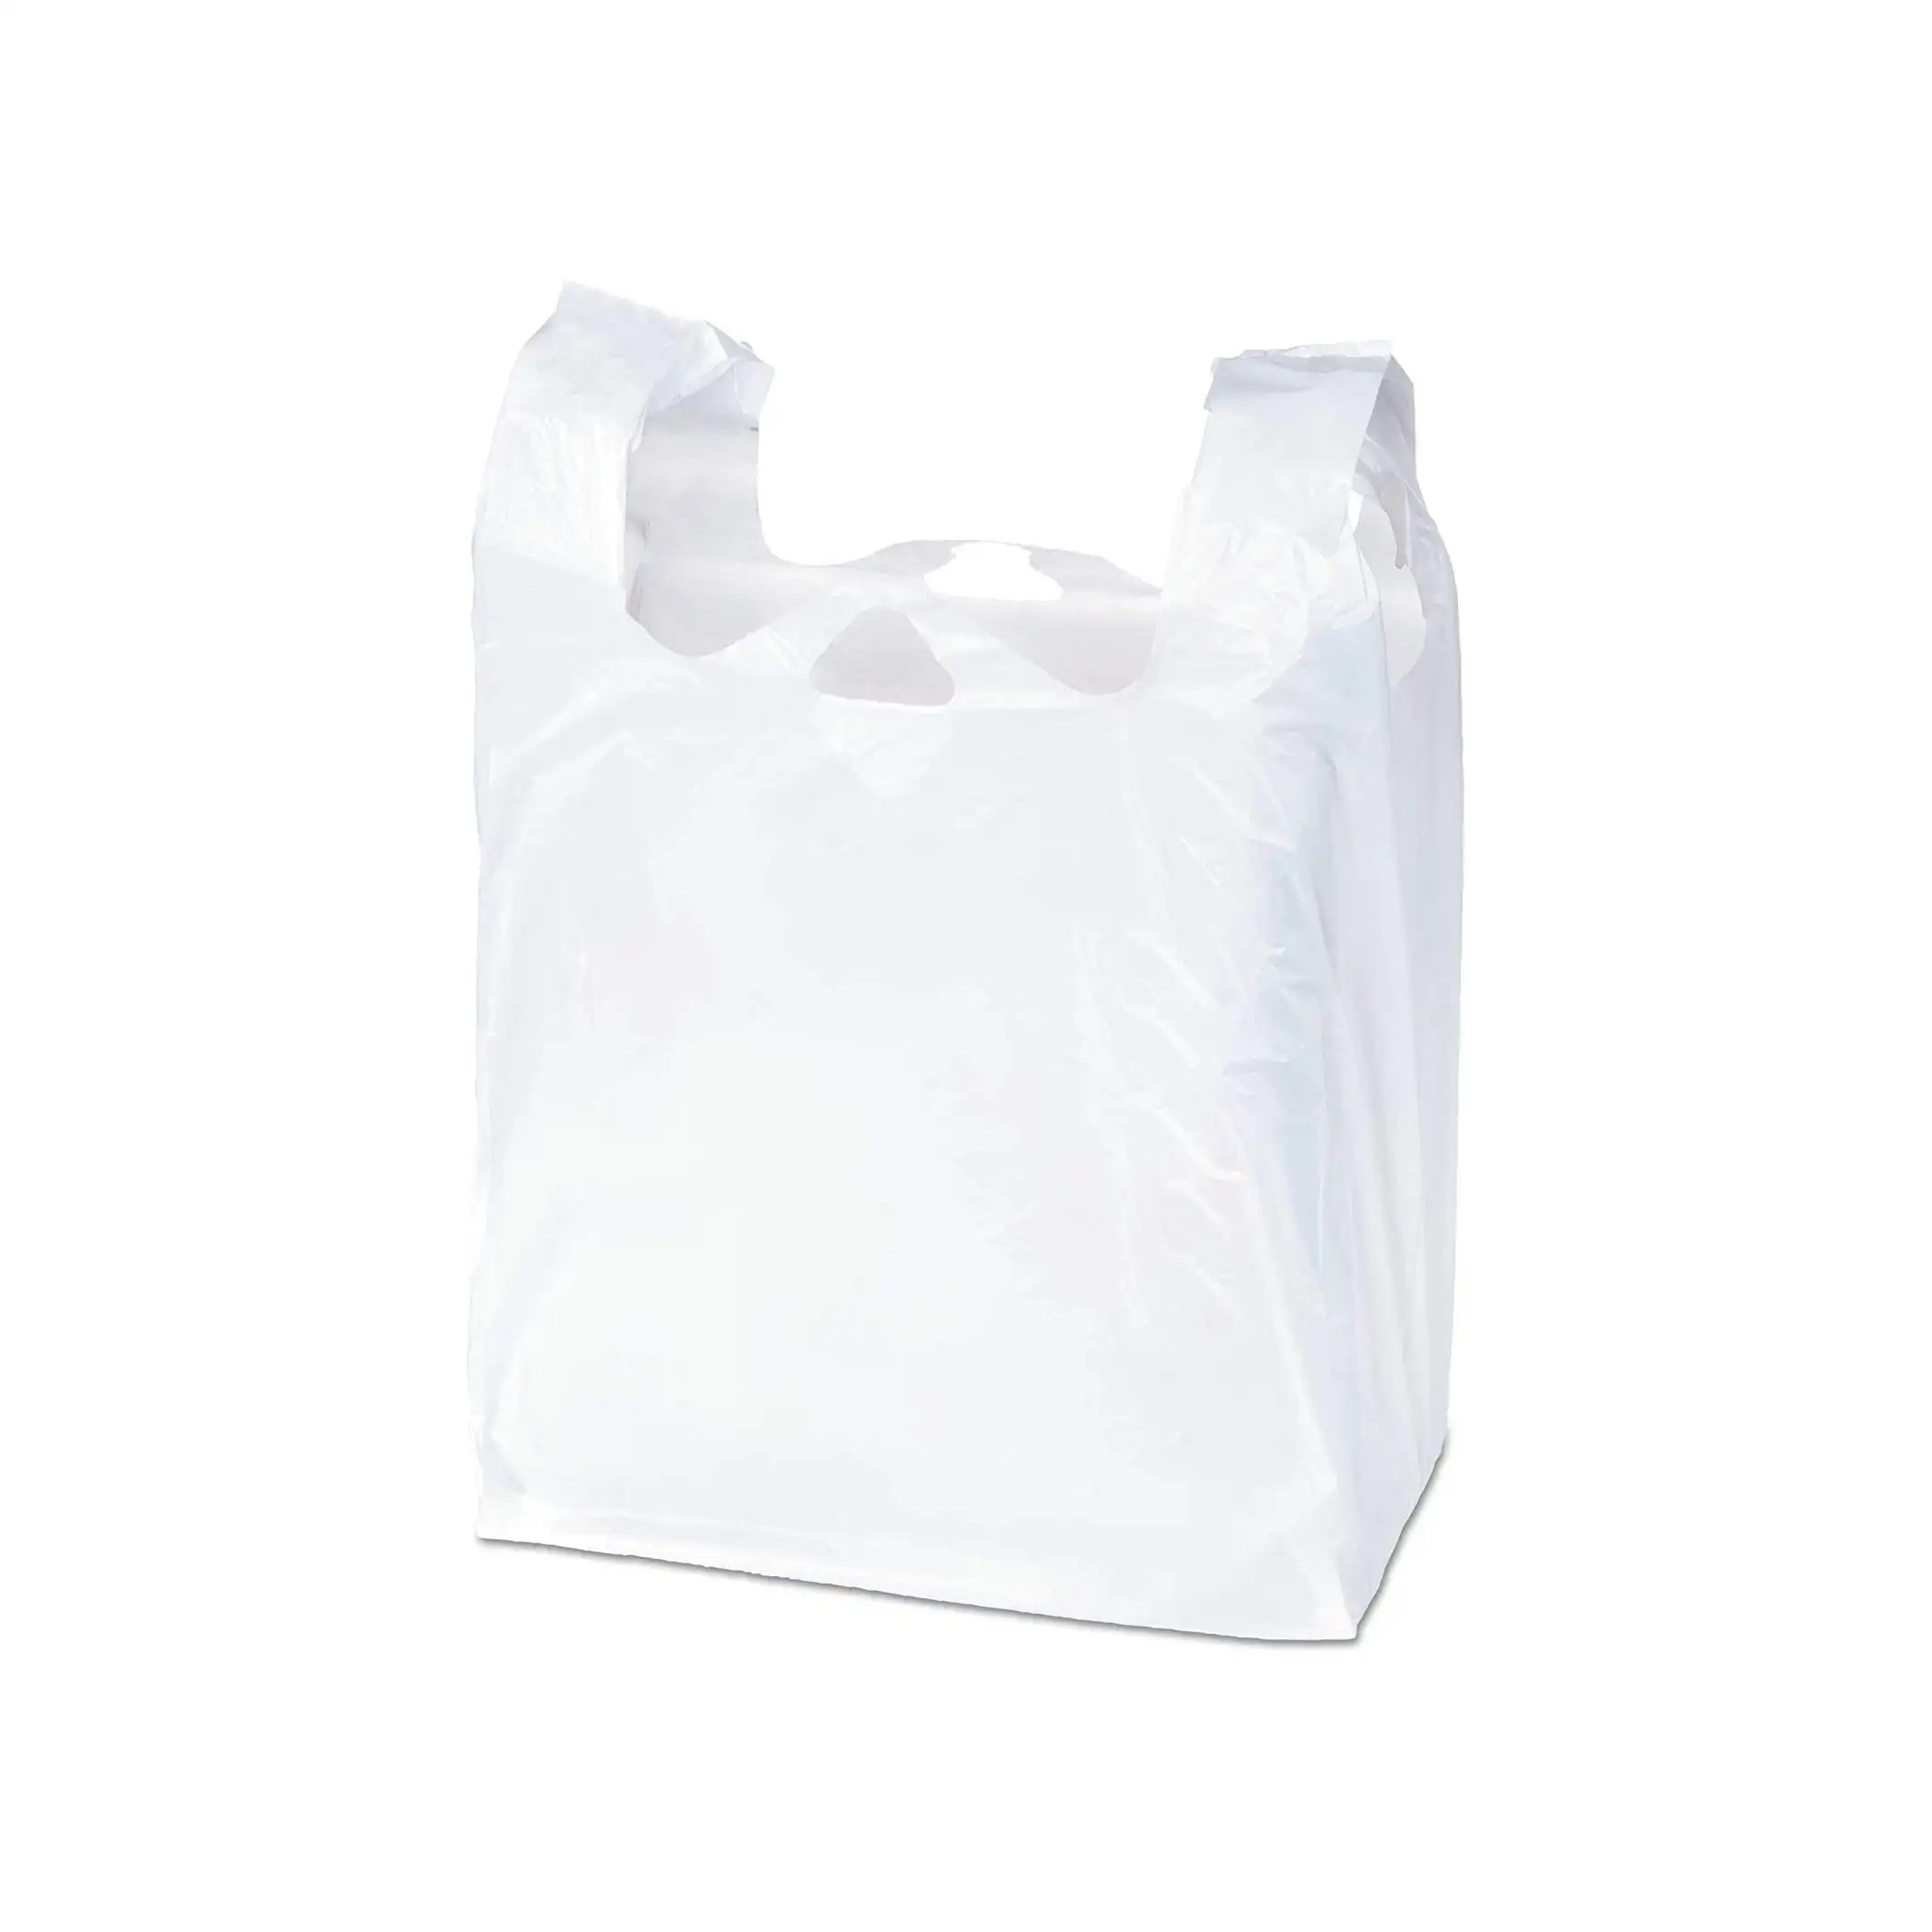 VietnによってTシャツプラスチックベストキャリアとして設計されたリサイクル素材で作られた環境にやさしい食料品のショッピングバッグ